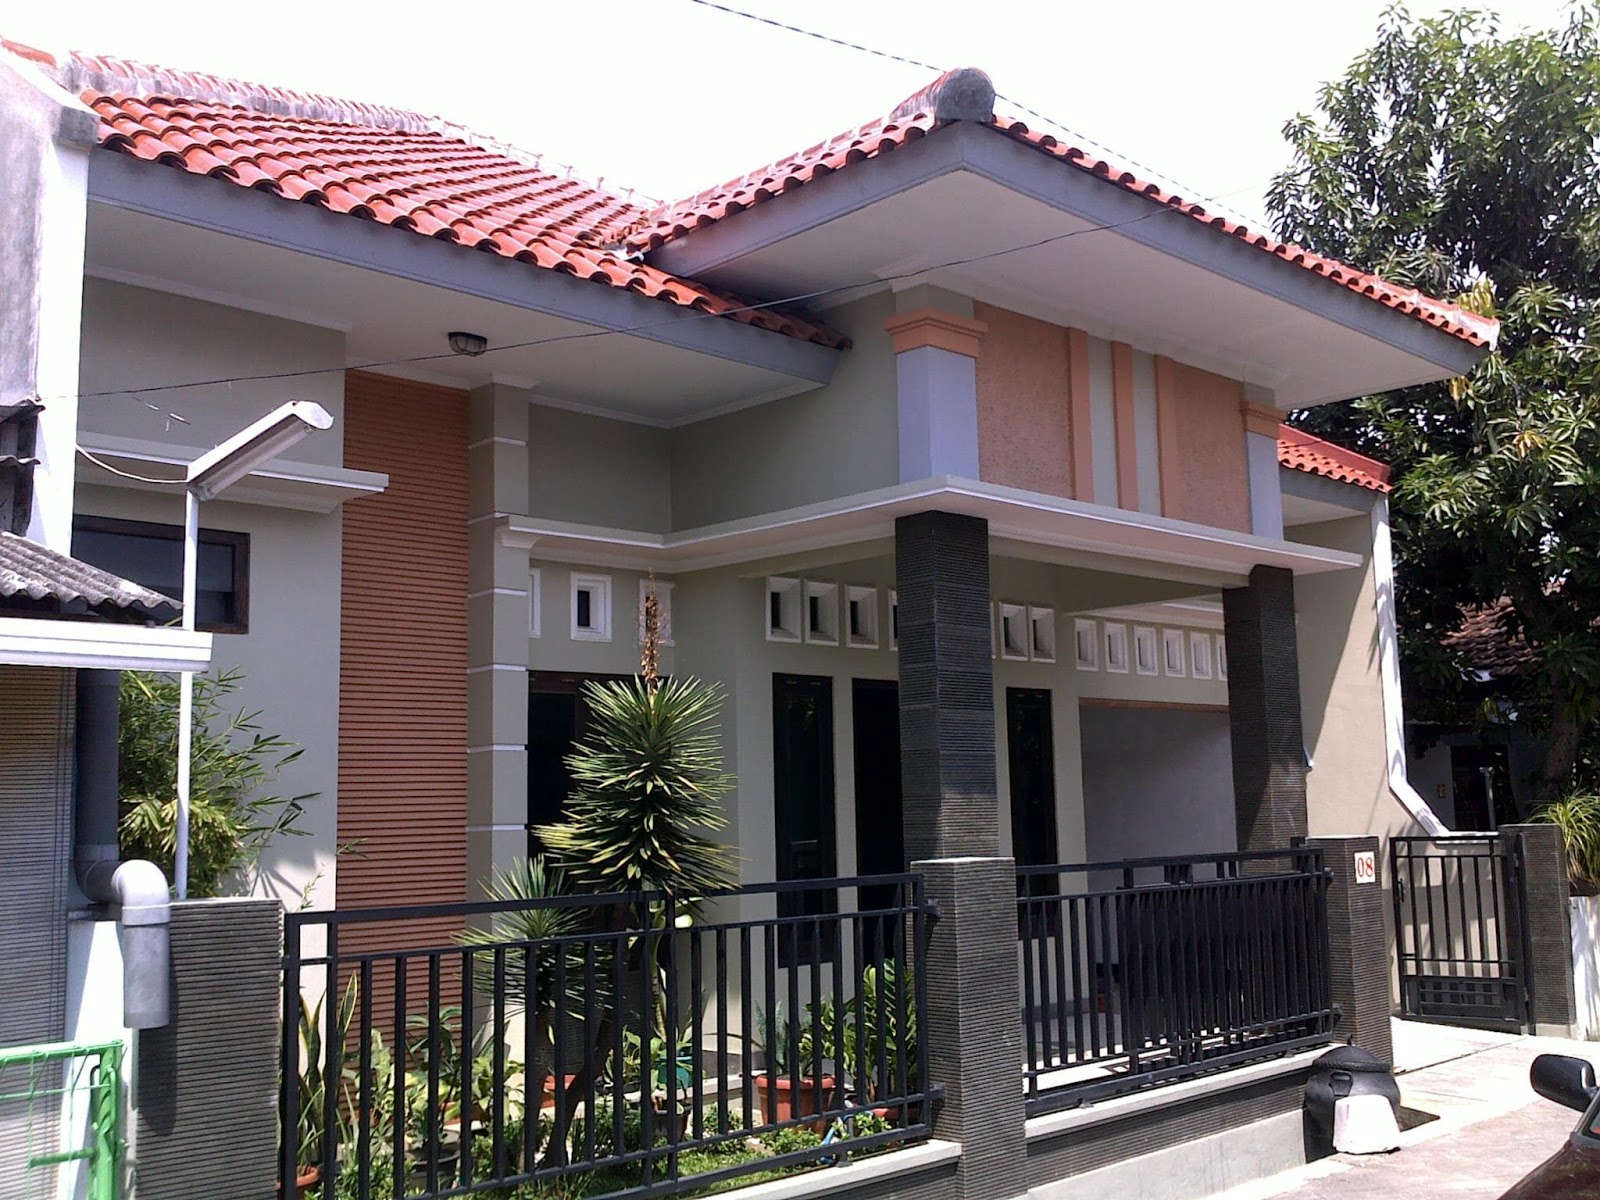 50 Model Teras Rumah Indonesia Sisi Rumah Minimalis